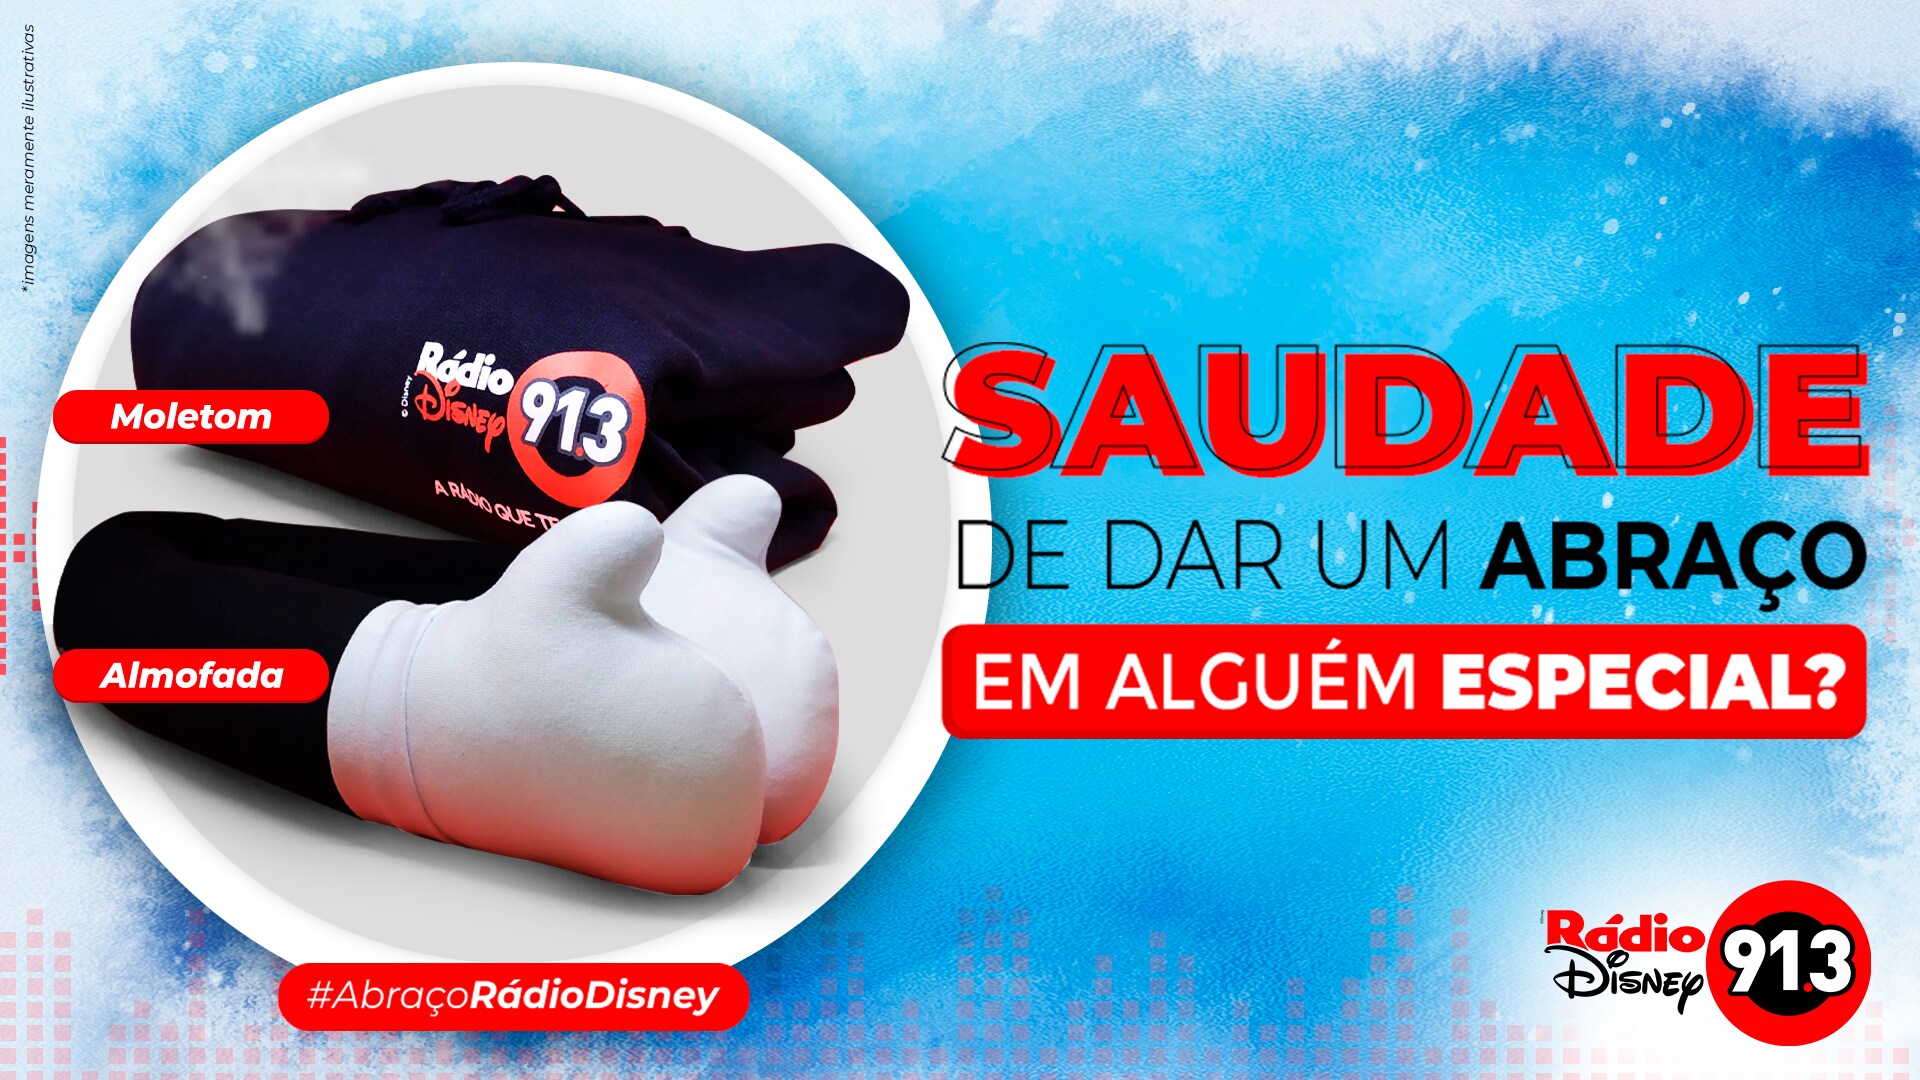 Abraço Rádio Disney + Moletom